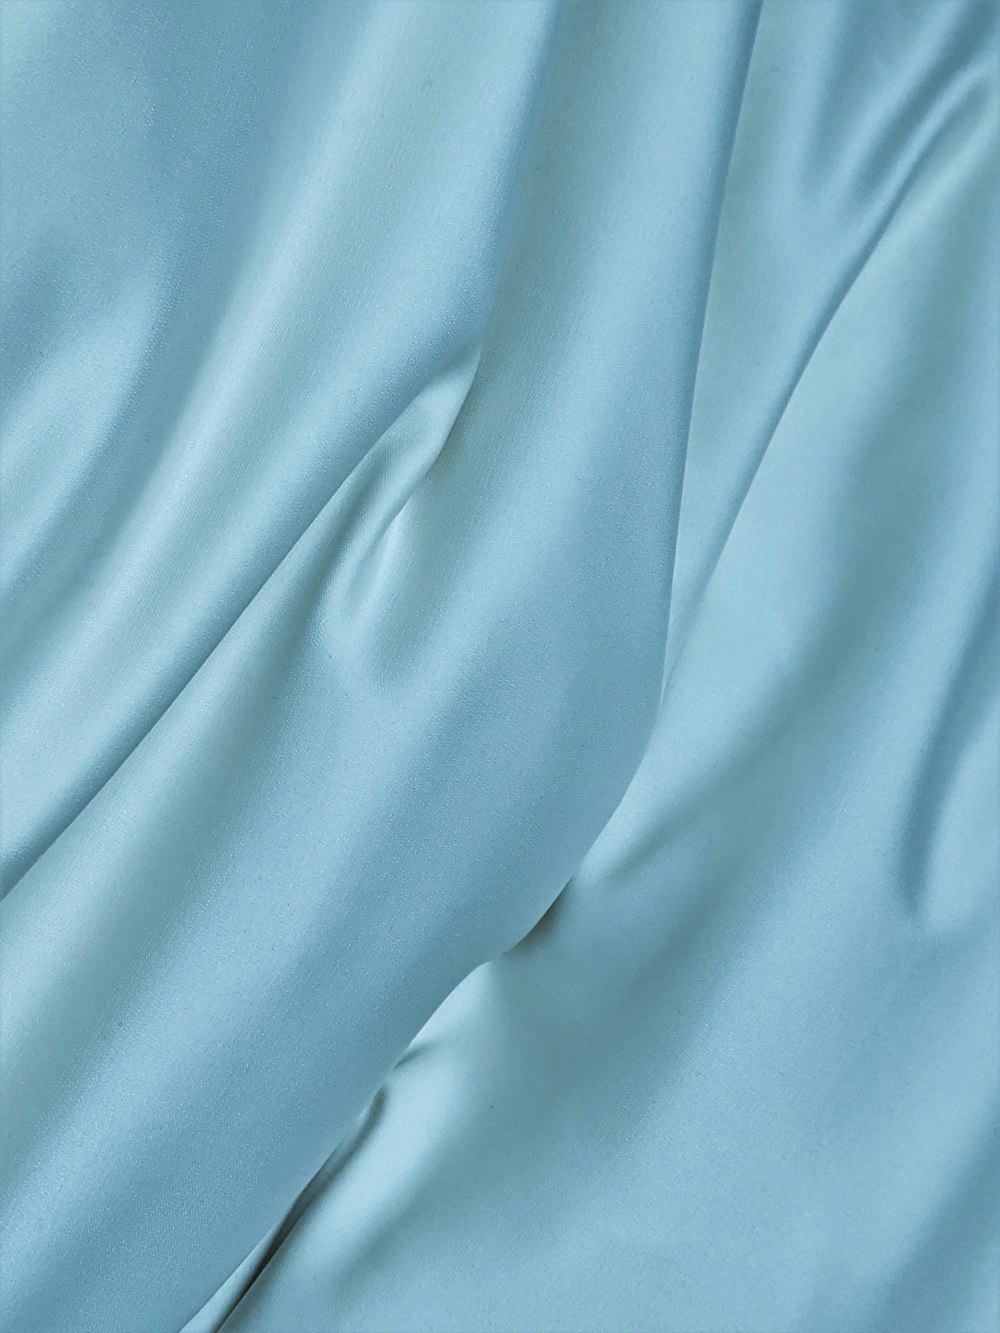 Textile bleu en photographie rapprochée